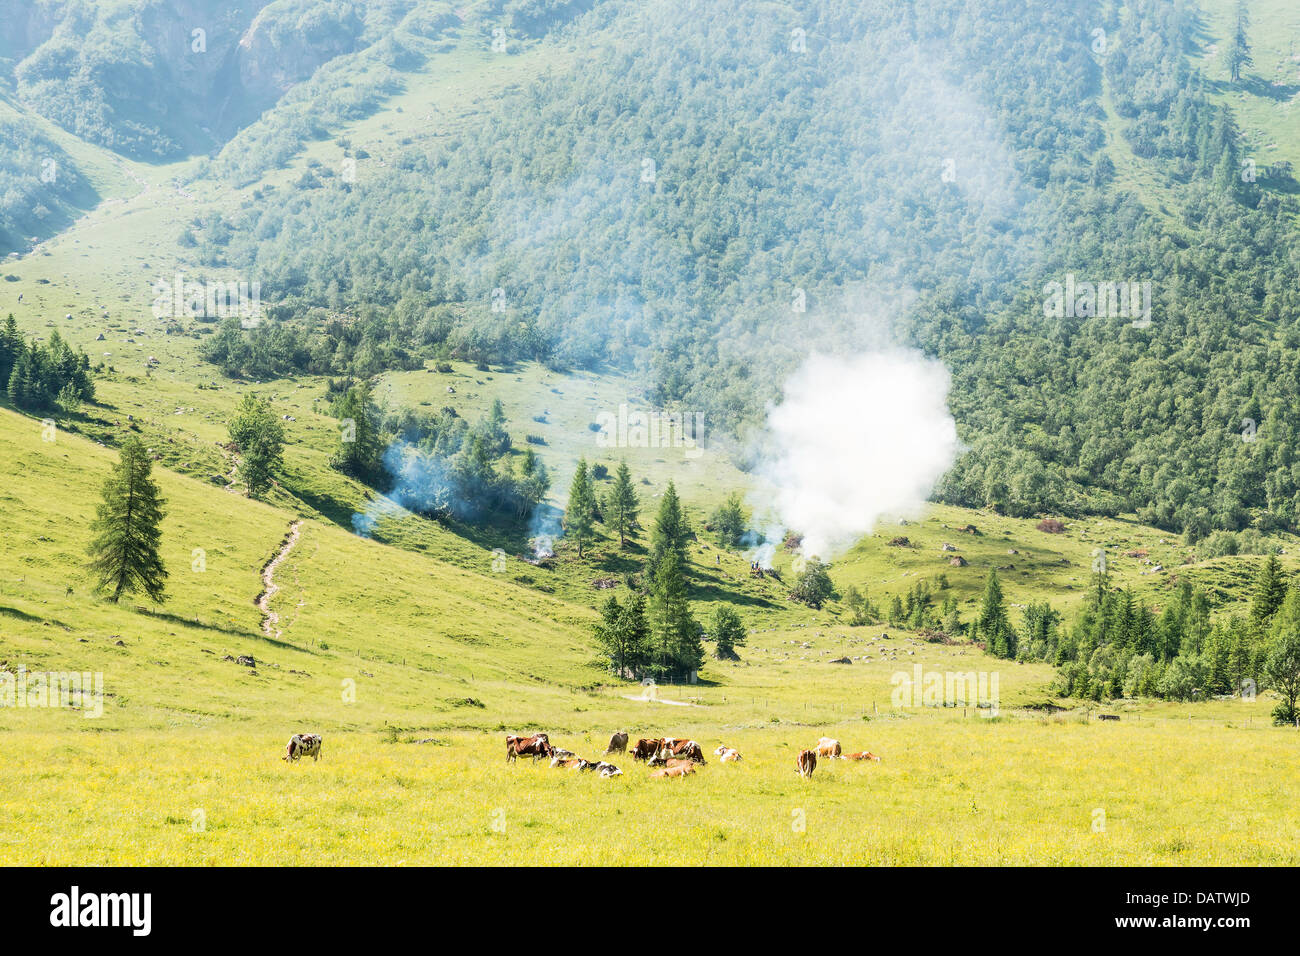 Immagine di un paesaggio nelle Alpi, Austria, con prato, alberi, vacche e wild fire Foto Stock